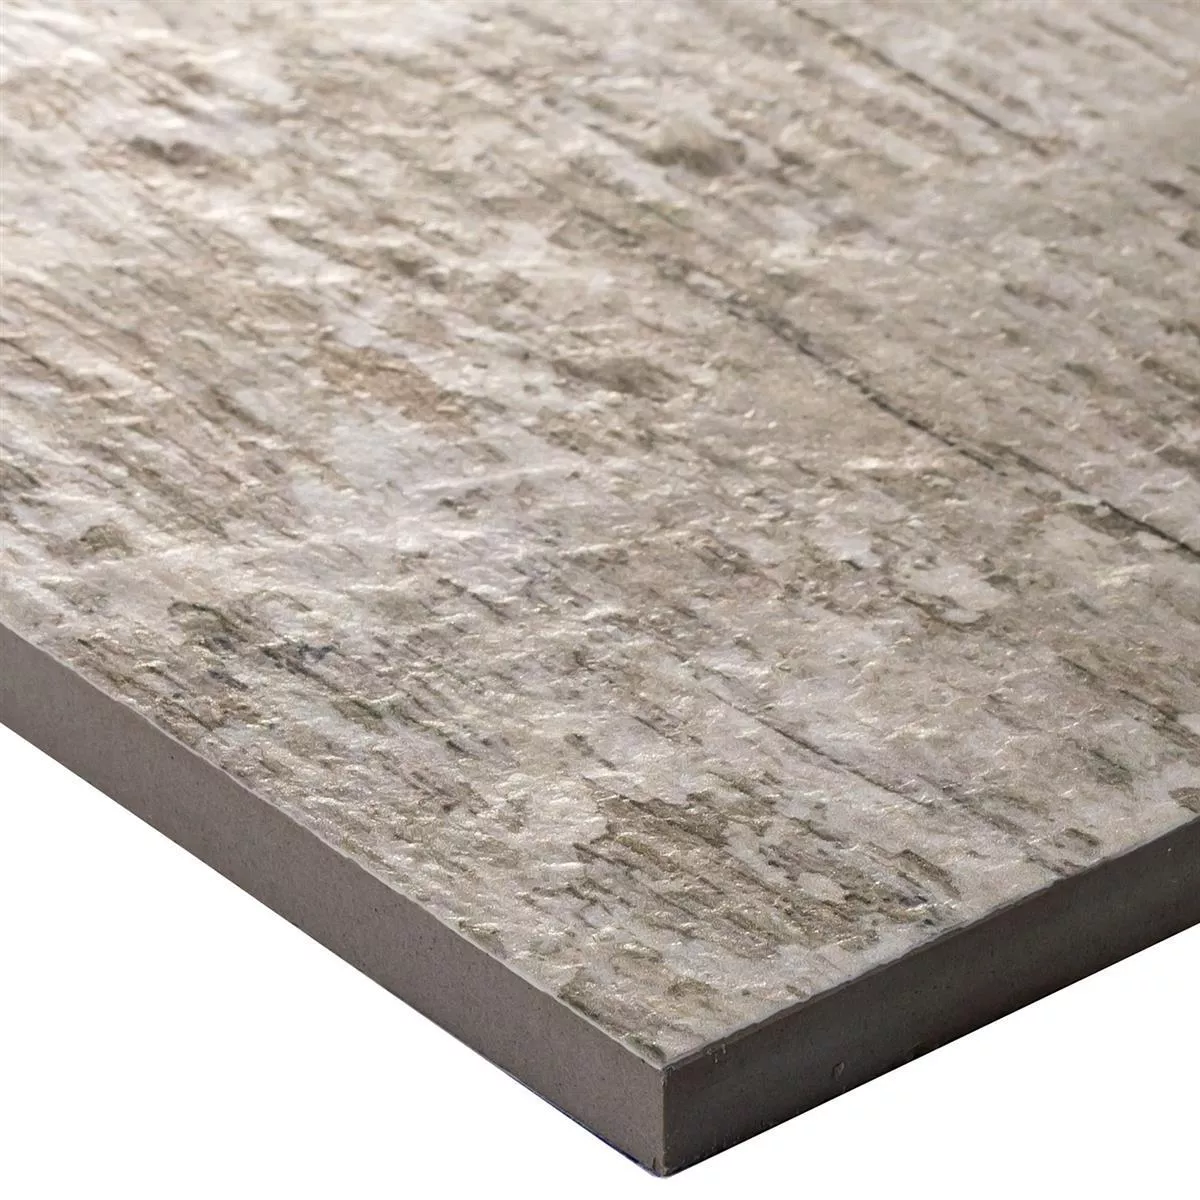 Sample Wood Optic Floor Tiles Mountain White 15x90cm